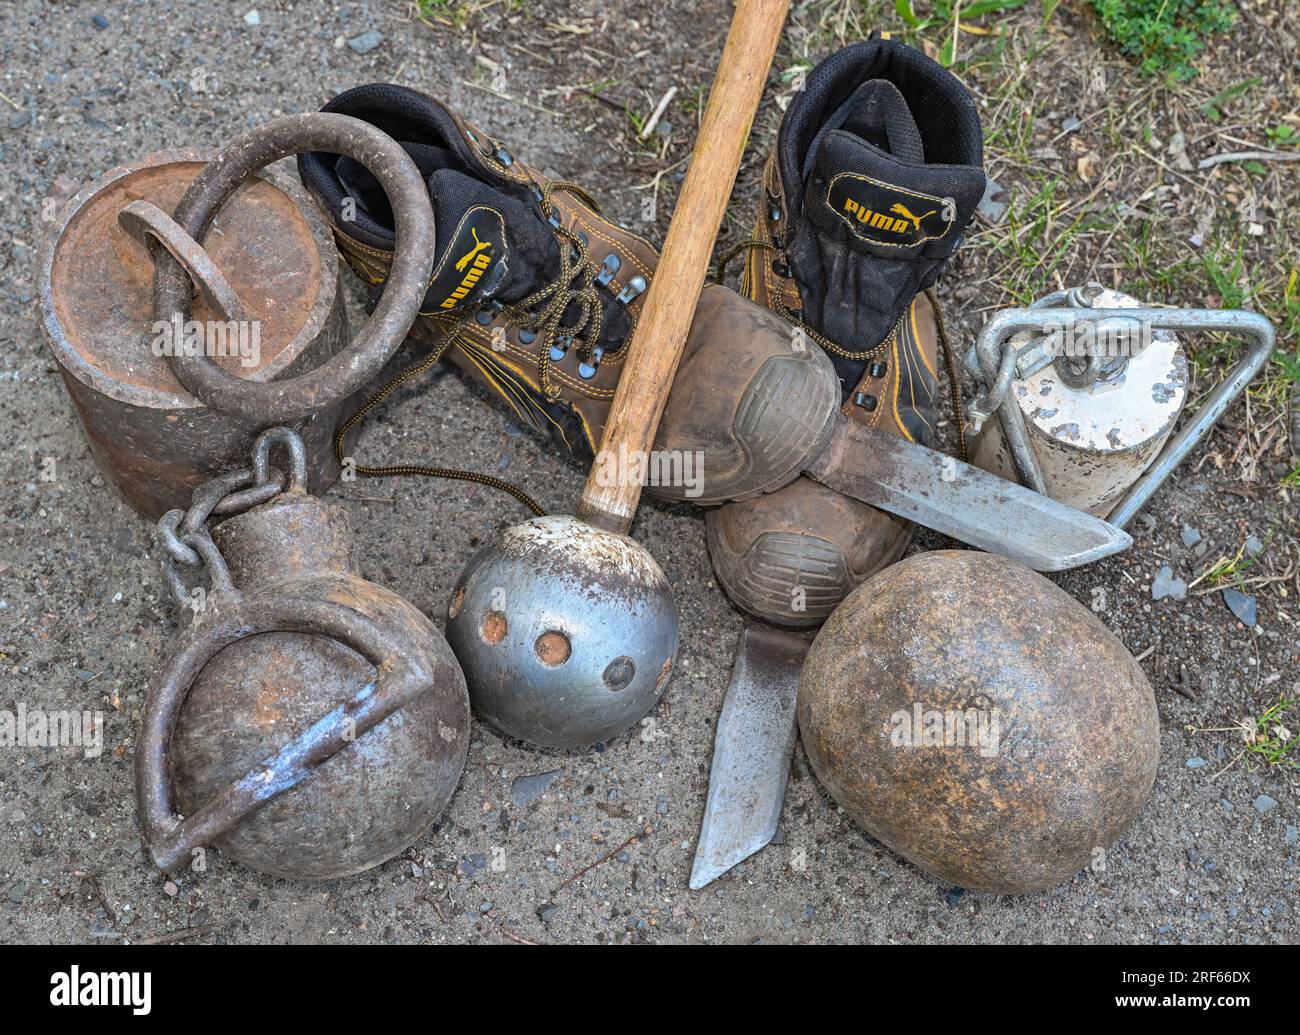 Ball hammer immagini e fotografie stock ad alta risoluzione - Alamy